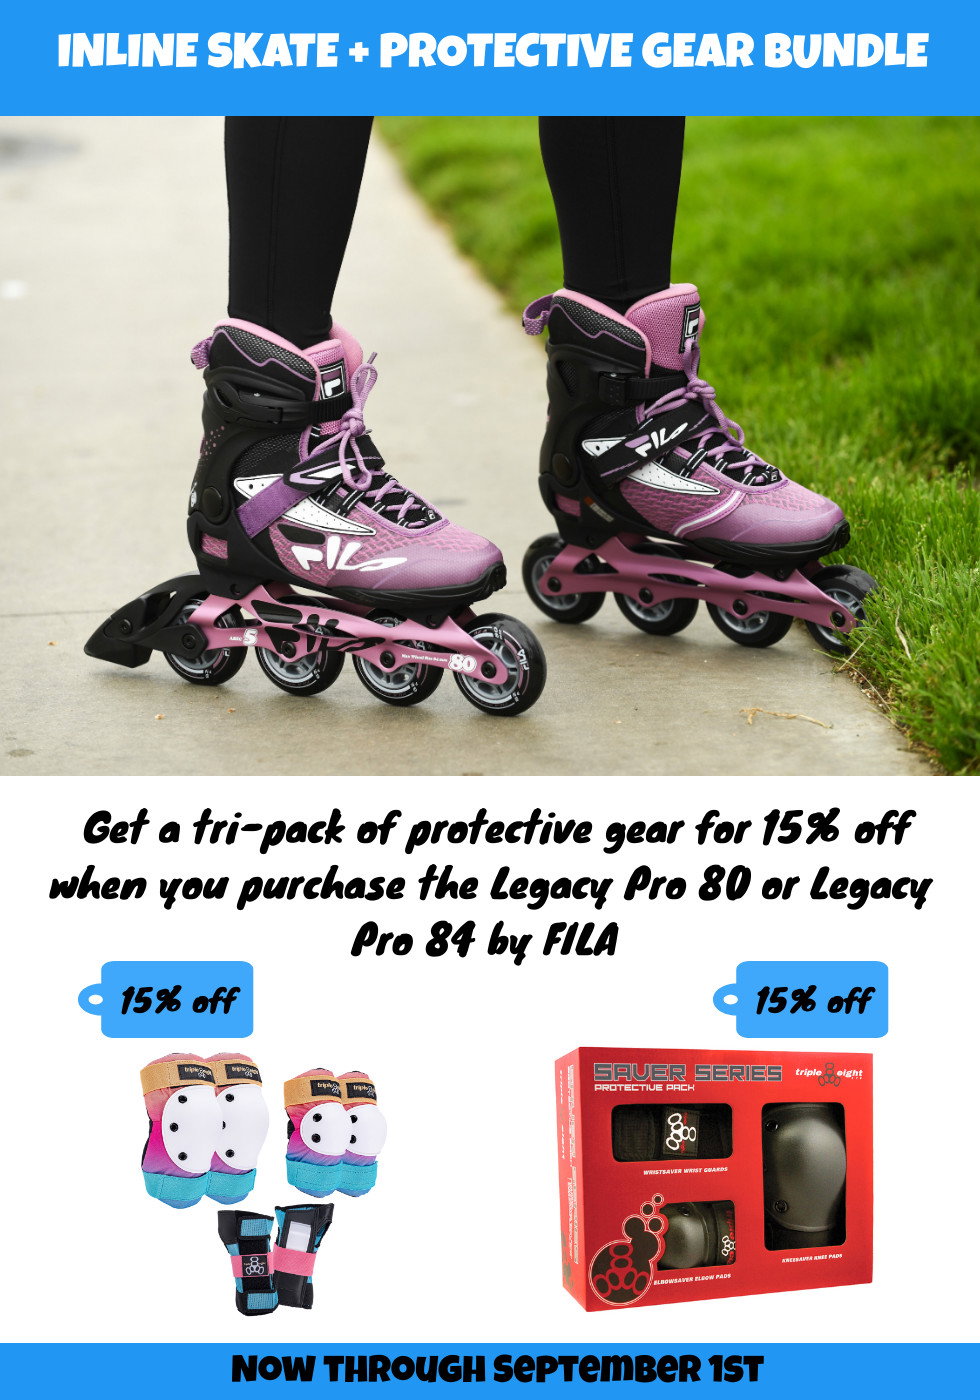 mobil Medarbejder melodisk RollerSkateNation.com: Buy FILA Inline Skates and Save on Protective Gear |  Milled